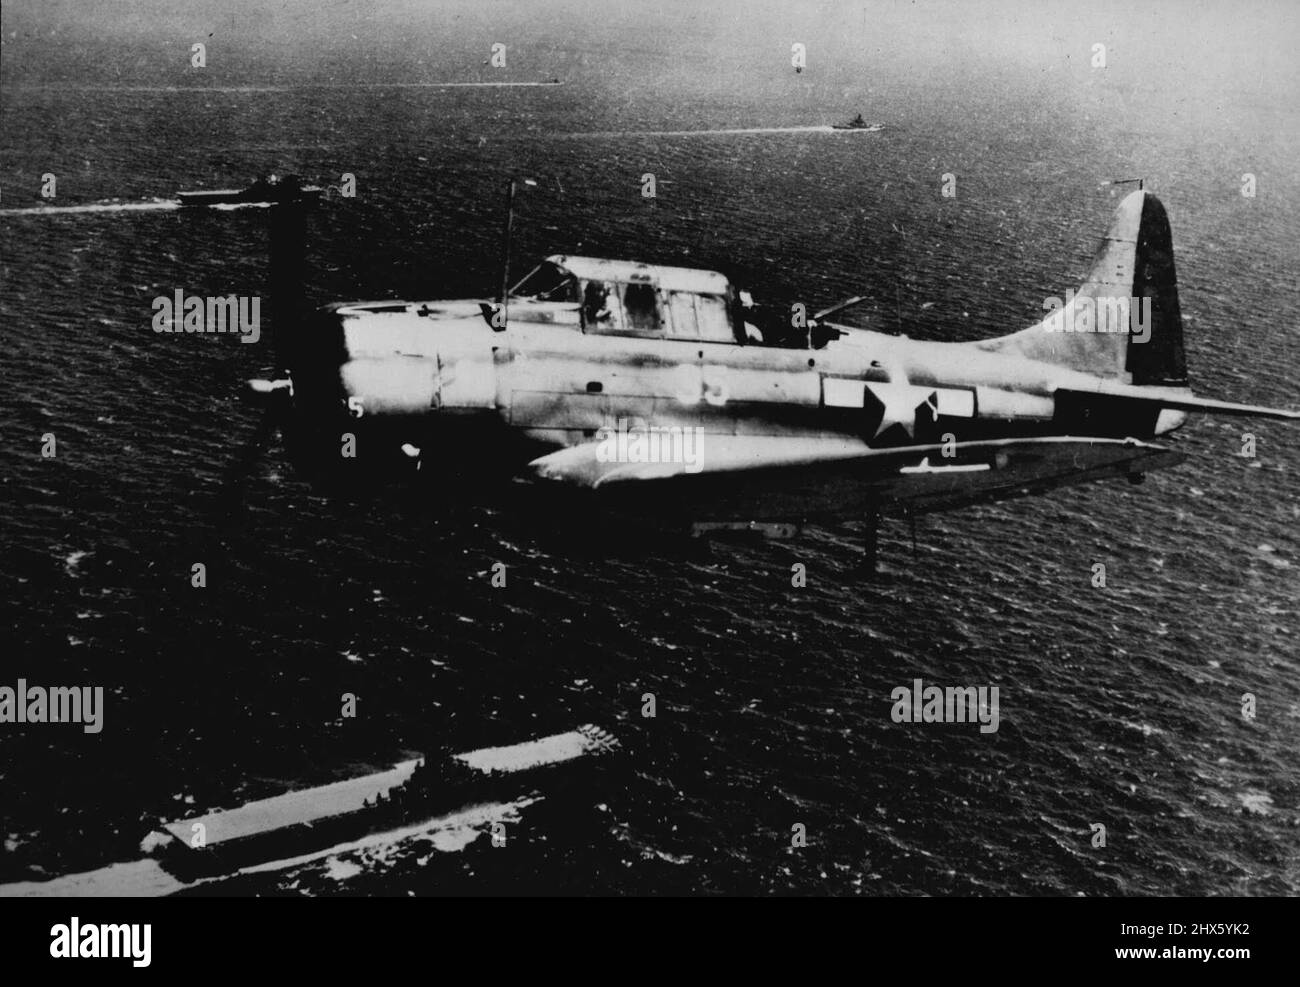 Les chefs de la Force opérationnelle des transporteurs de la Marine américaine pour la grande base japonaise -- Une bombe a claqué sous son fuselage, un bombardier-plongée de la Marine américaine survole les unités d'une force opérationnelle de la Marine américaine qui traverse le Pacifique central vers Palau, base japonaise stratégique dans les îles Caroline. Deux porte-avions (en bas à gauche et en haut (à gauche) et un cuirassé (en haut à droite) sont visibles, tandis que les éprises blanches marquent d'autres unités de la force. Lors d'une récente attaque aérienne et maritime de trois jours sur les places fortes ennemies dans les carolines de l'Ouest, Banque D'Images